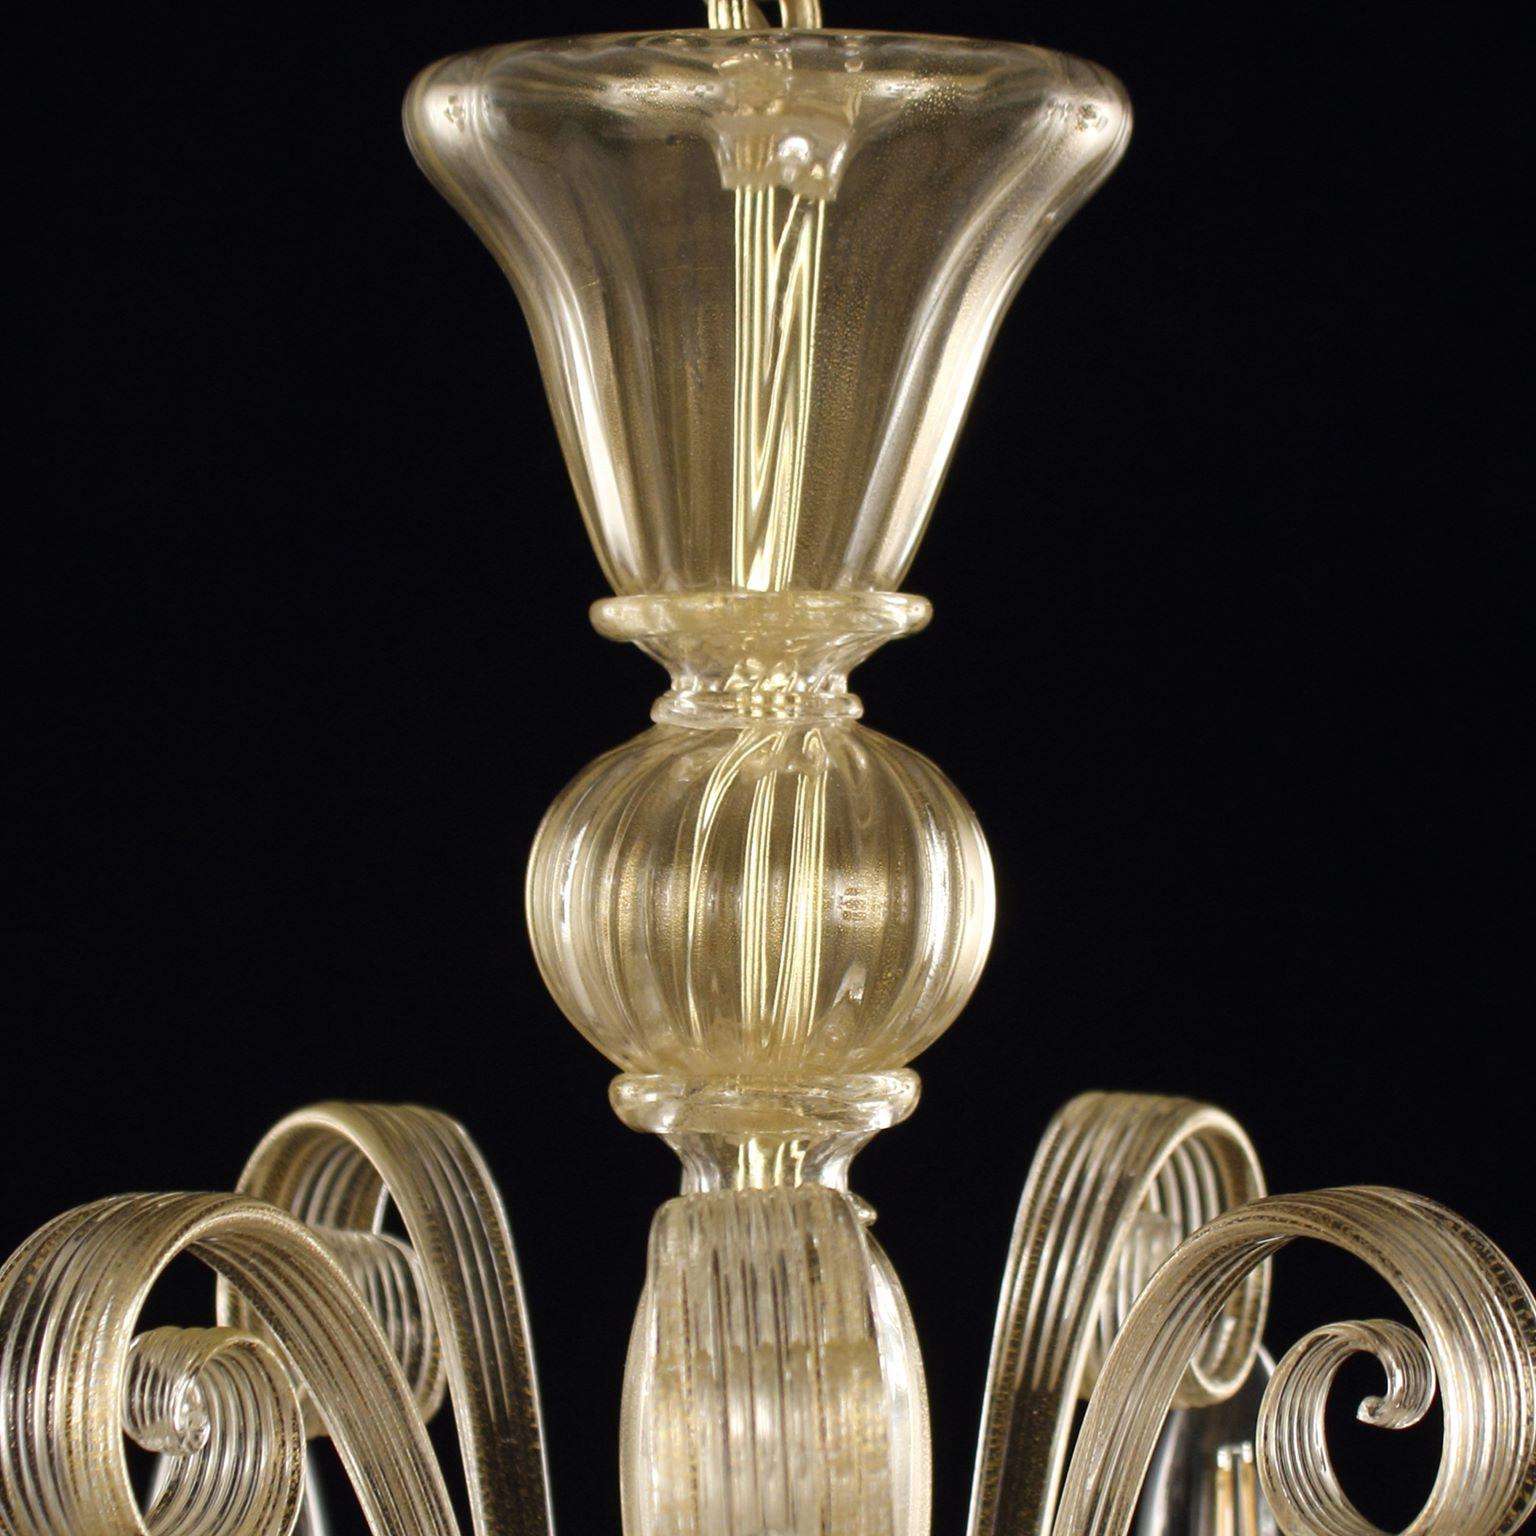 Lustre Capriccio, 5 lumières, verre artistique feuille d'or, avec des éléments ornementaux frisés par Multiforme.
Inspiré de la tradition classique vénitienne, il se caractérise par une colonne centrale où sont installés de nombreux éléments